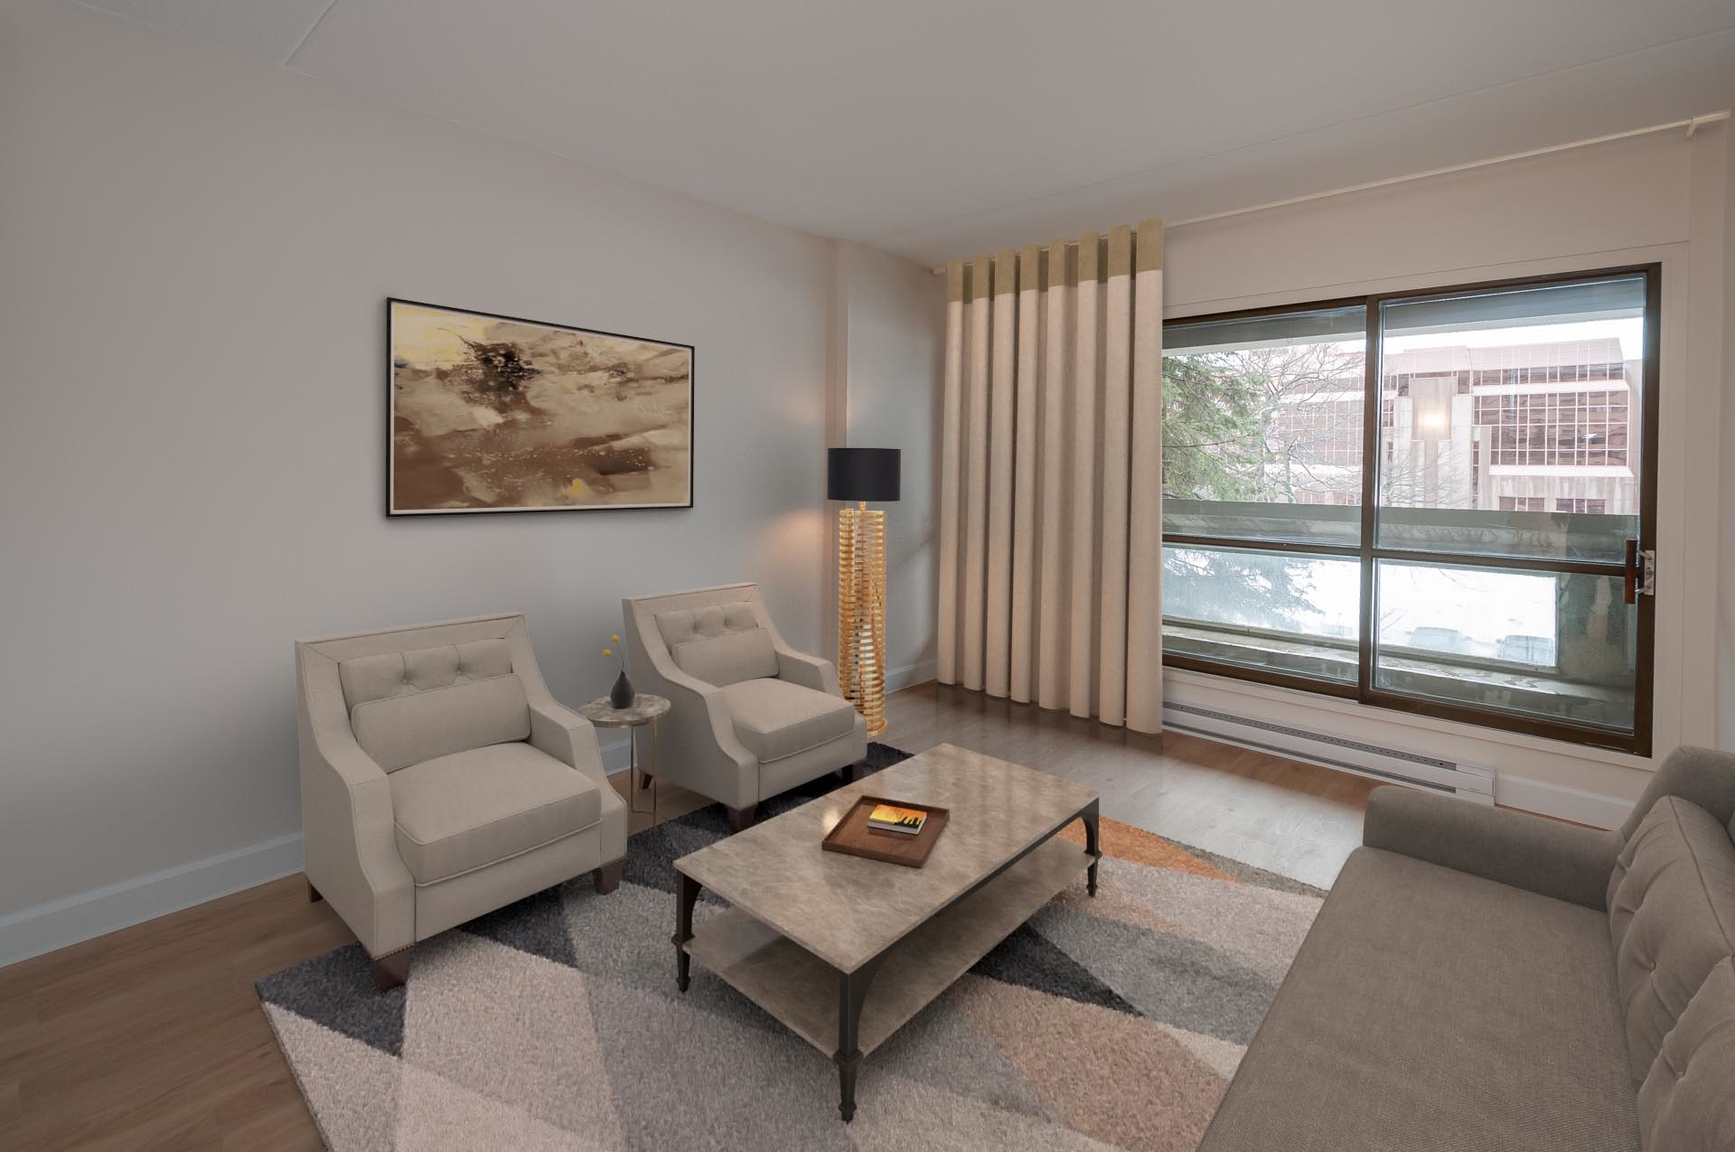 1 bedroom Apartments for rent in Quebec City at Les Jardins de Merici - Photo 16 - RentQuebecApartments – L407121